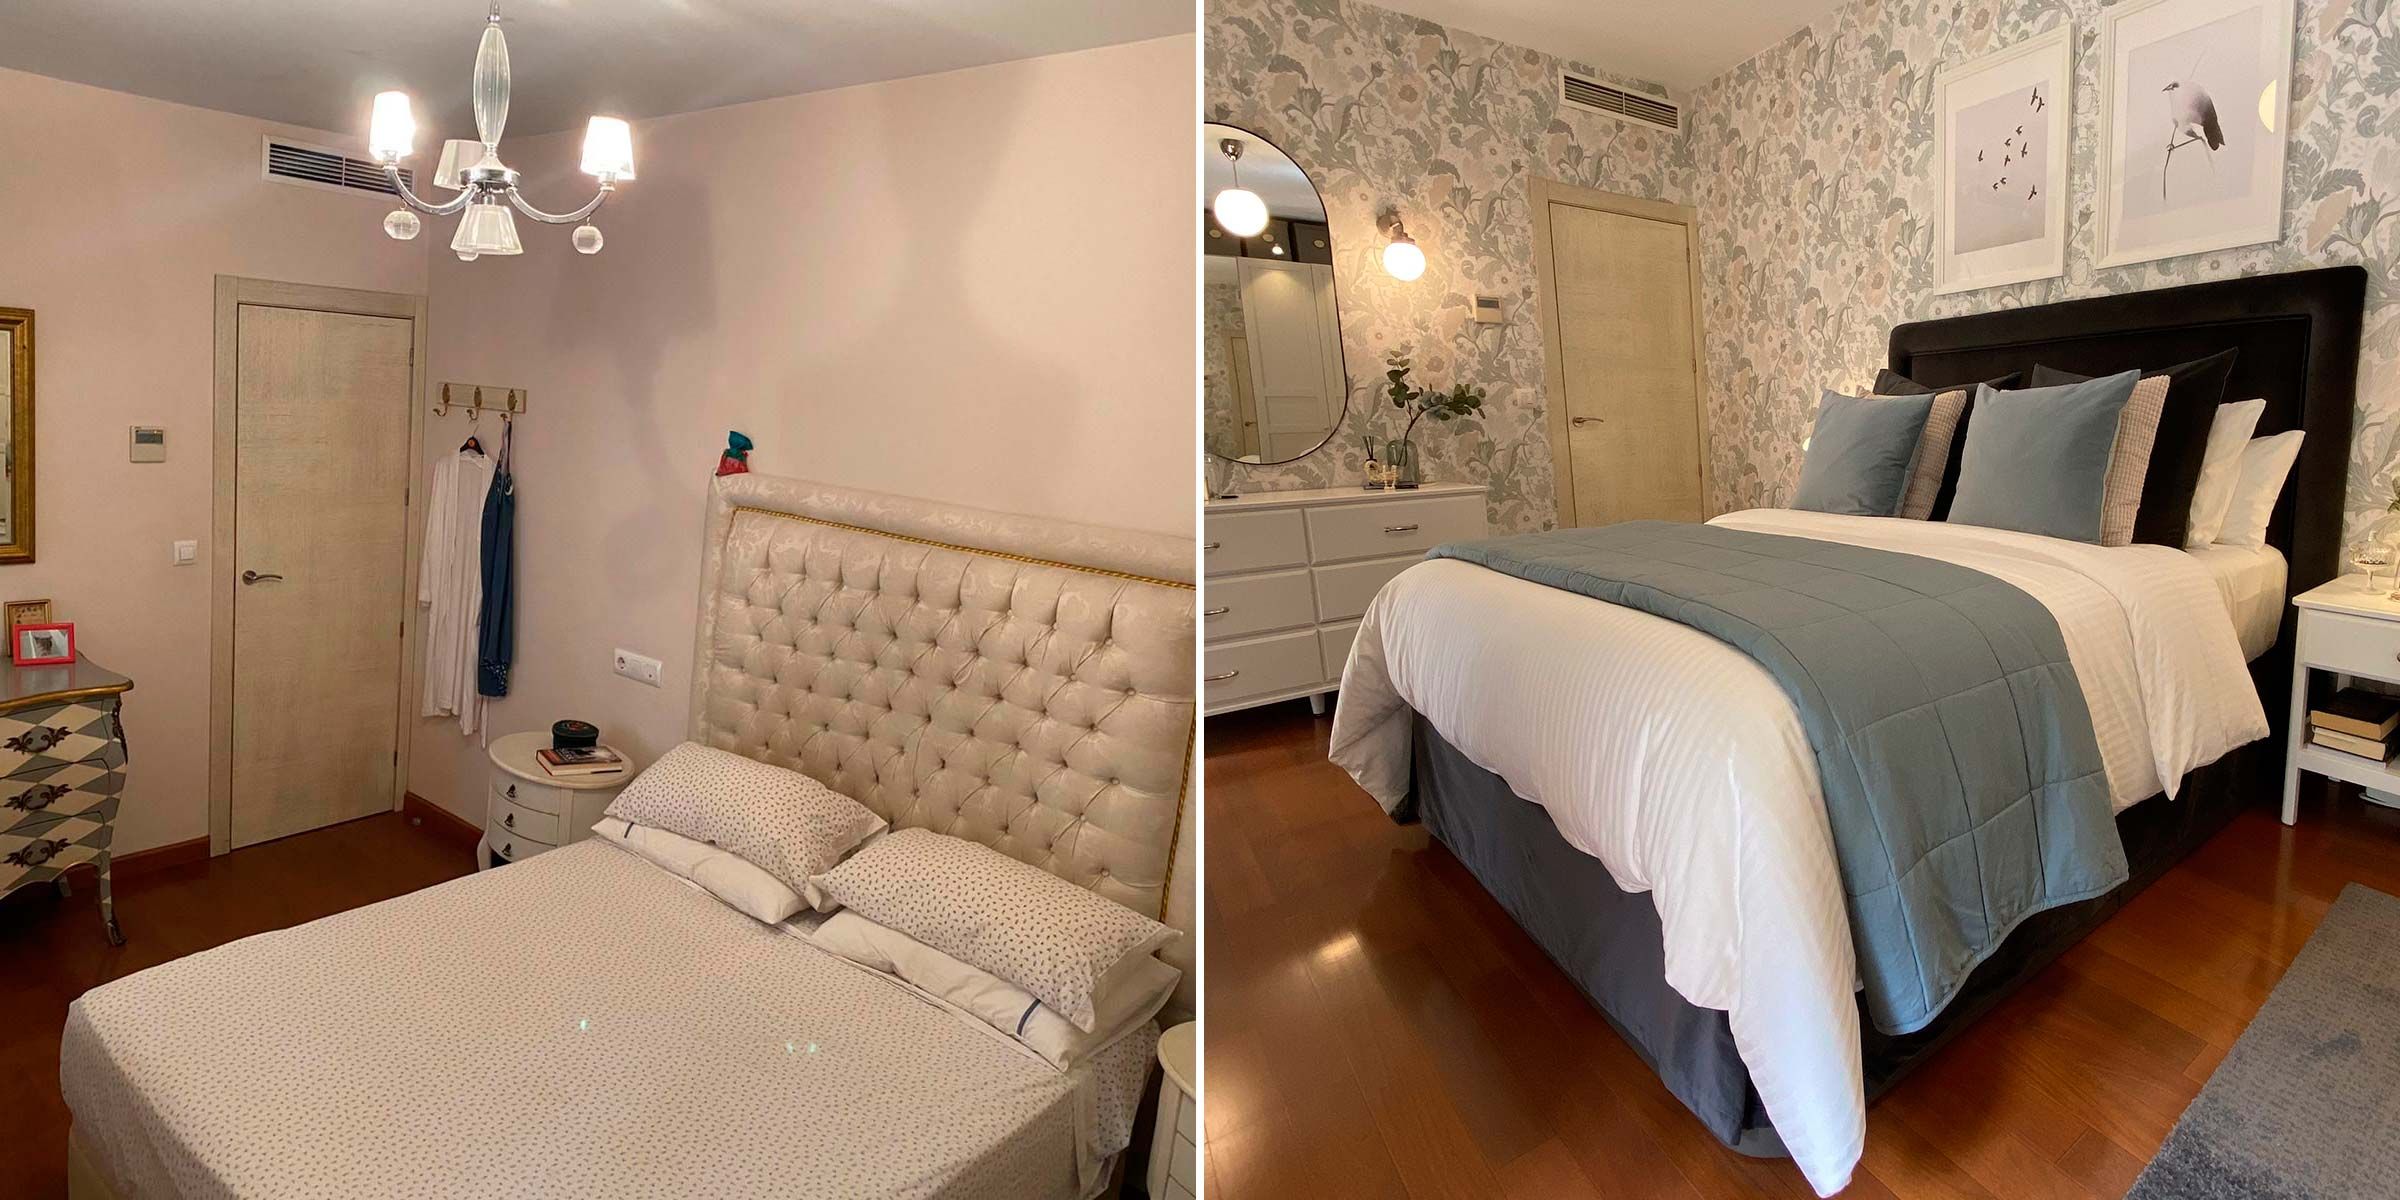 Un dormitorio clásico romántico con decoración de IKEA